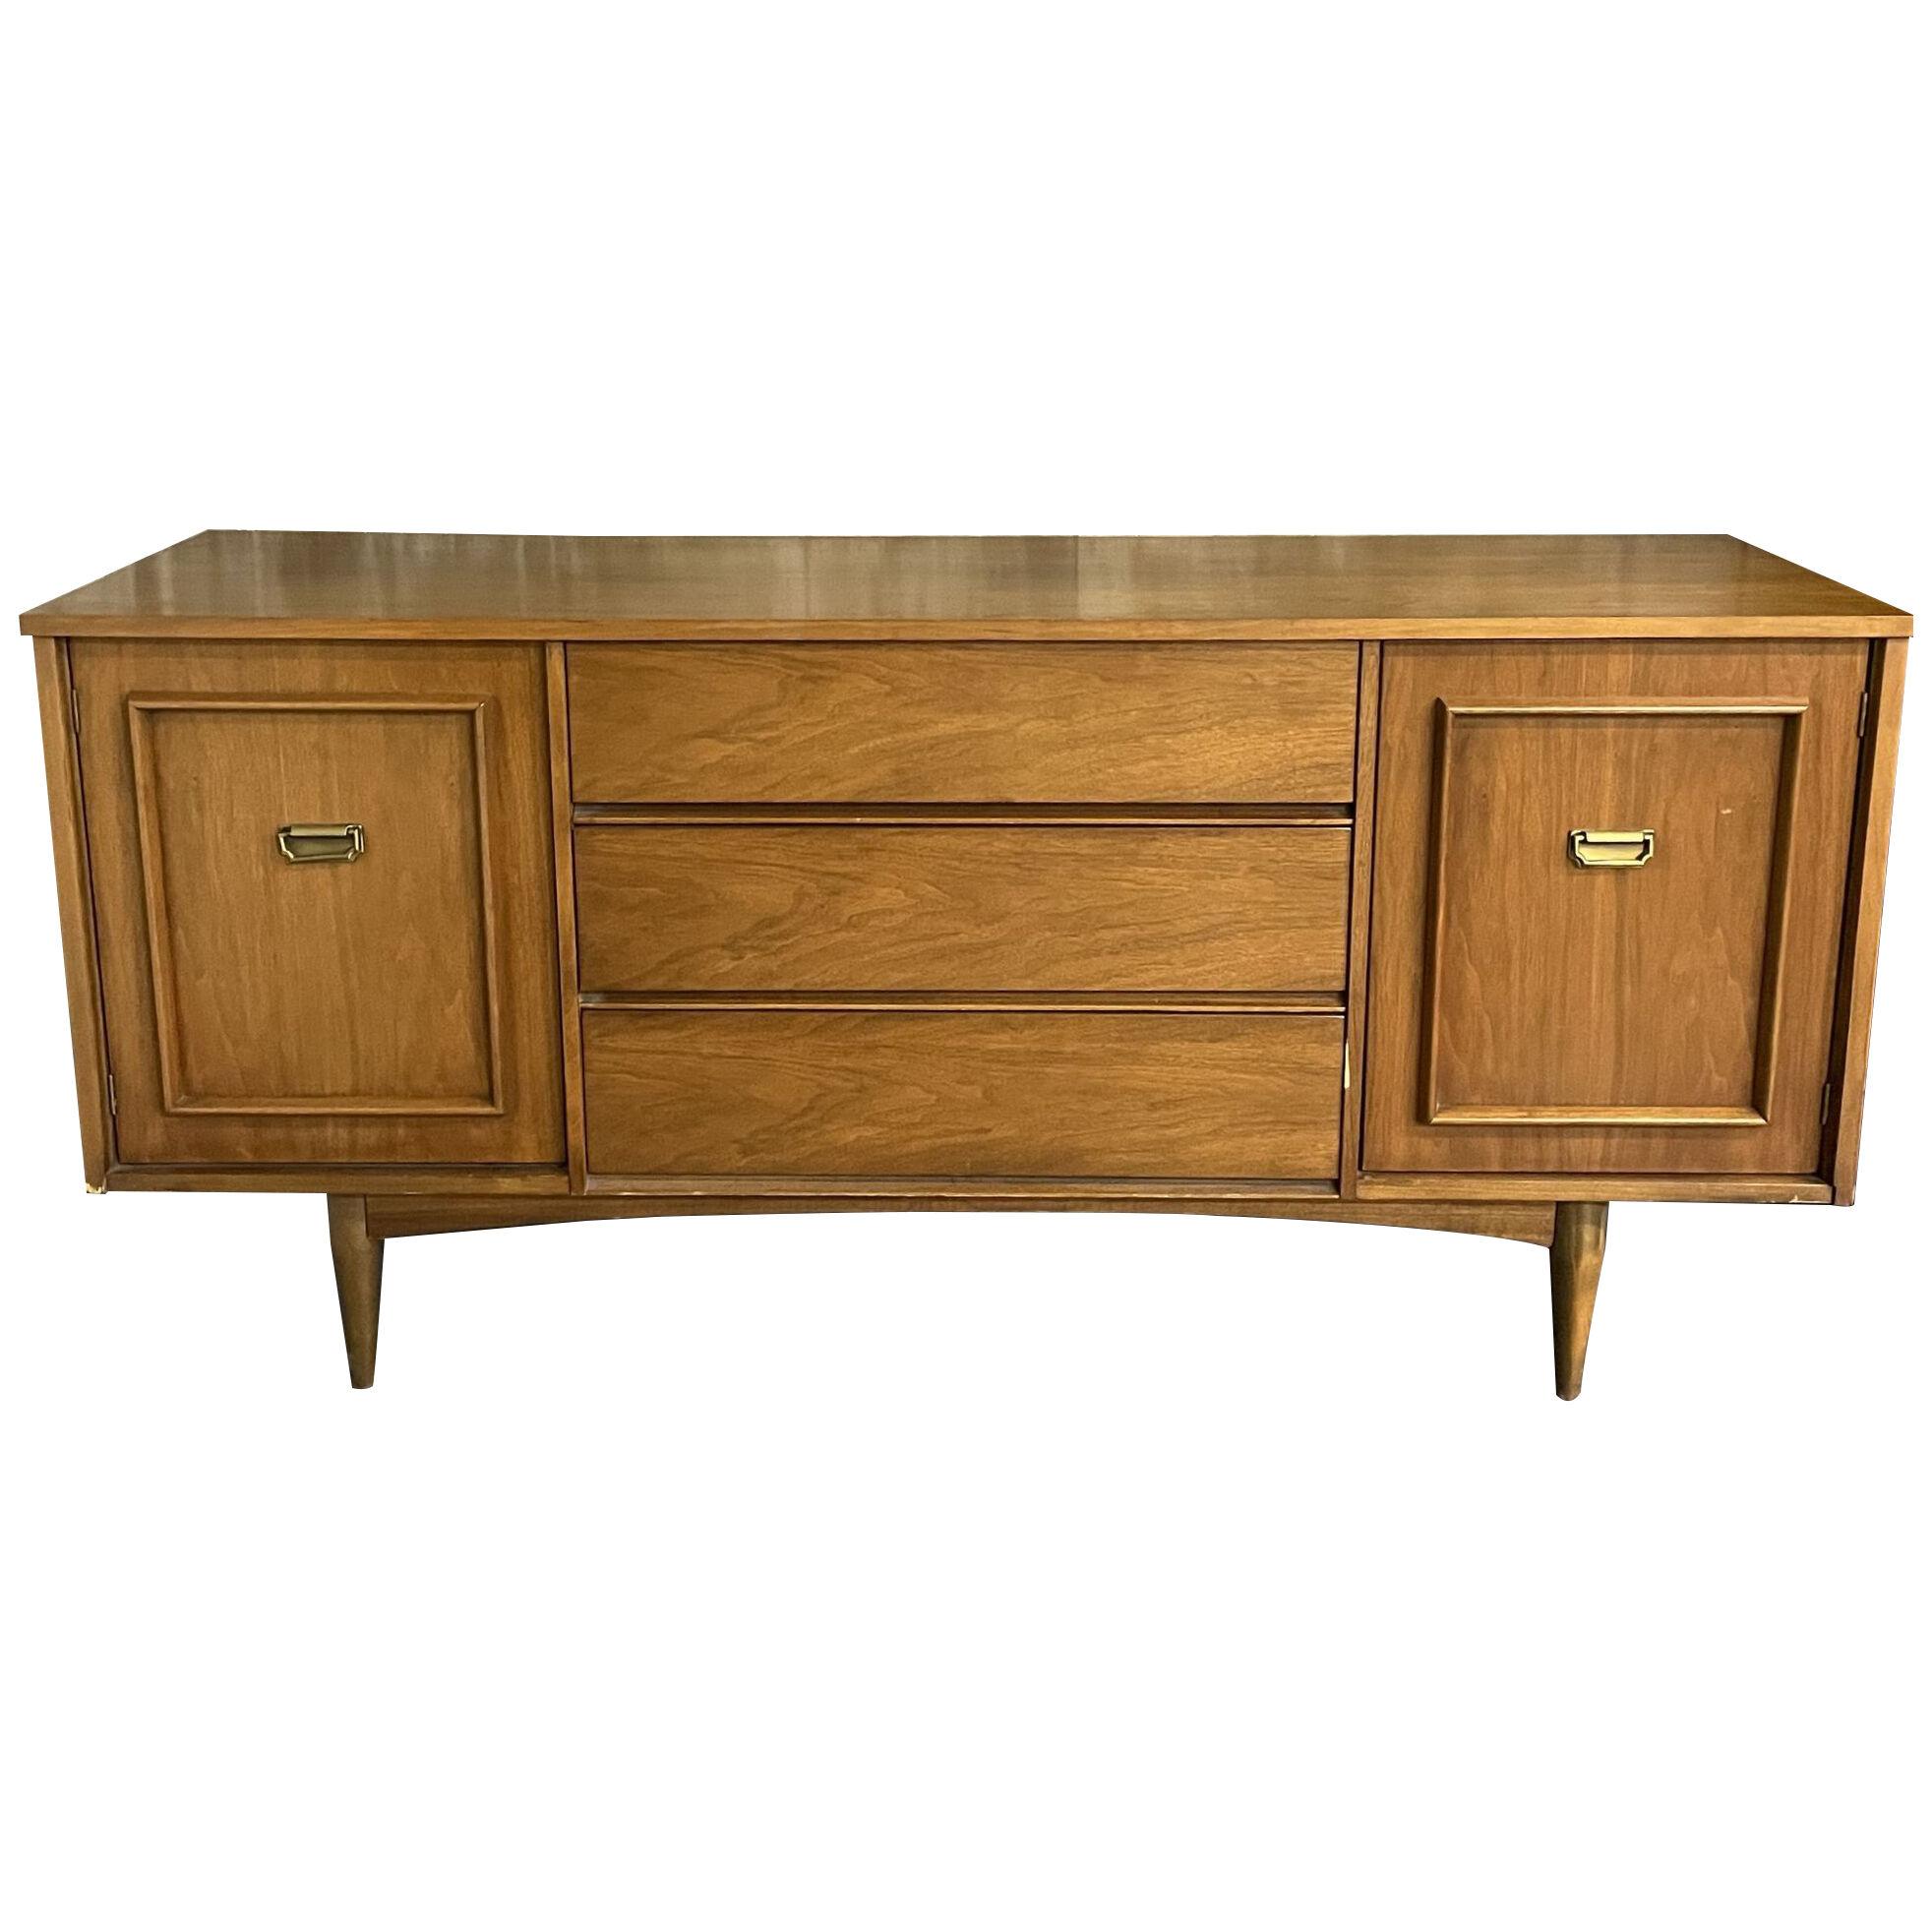 Mid-Century Modern Dresser, Chest or Sideboard, Walnut